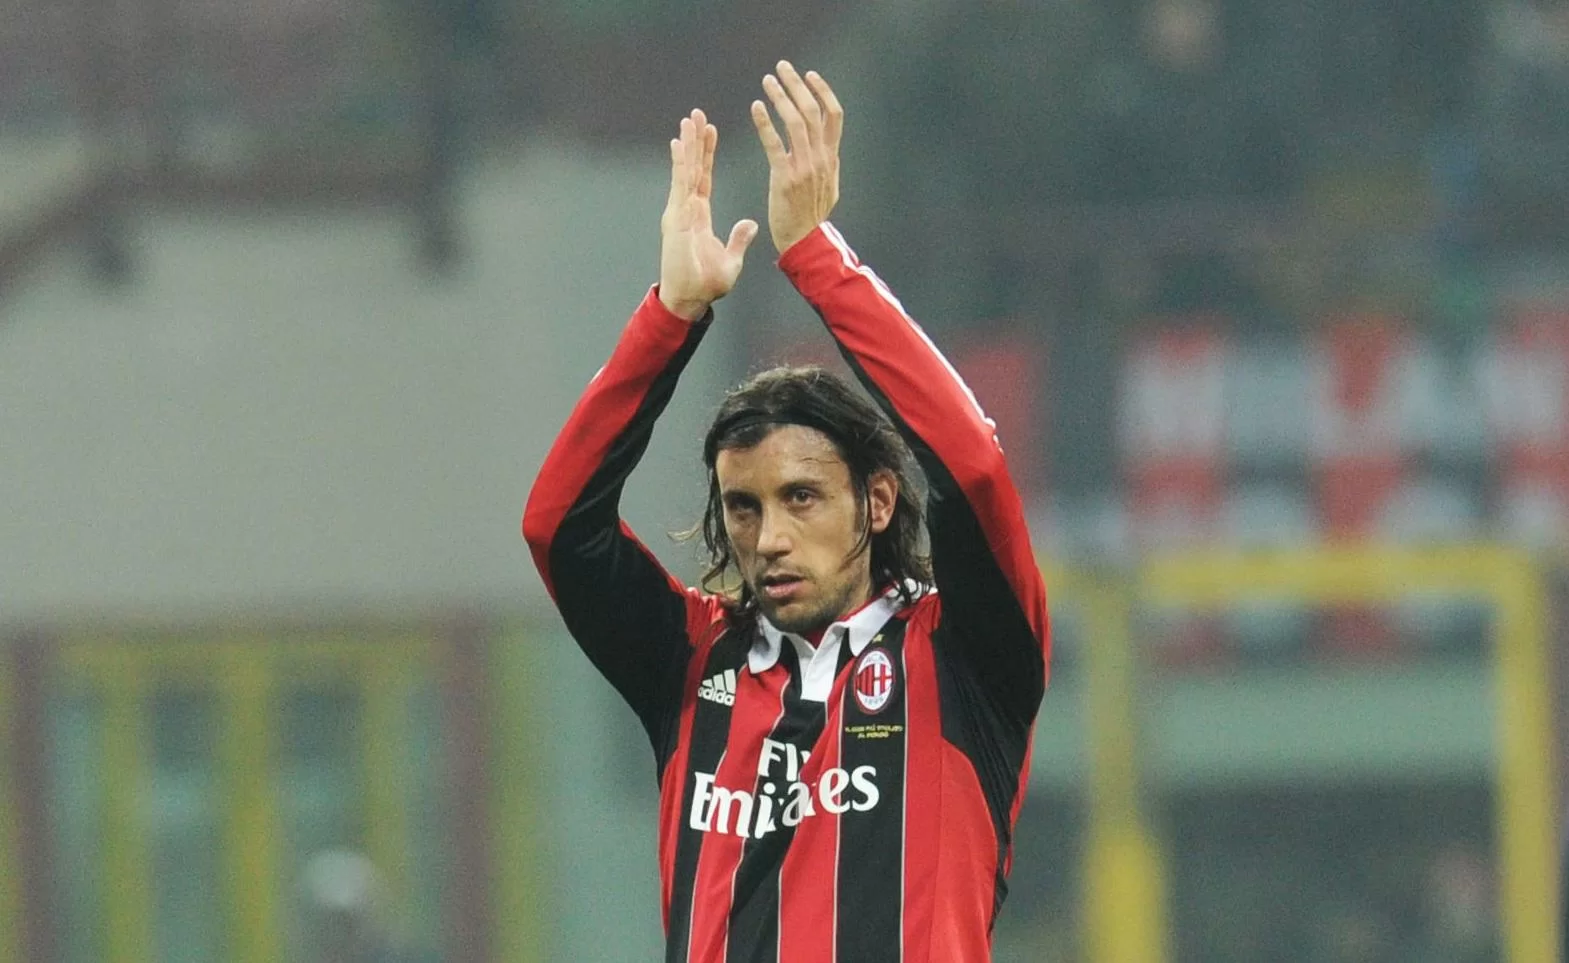 CALCIOMERCATO/ Milan, Zaccardo vuole il Parma. Ghirardi non conferma né smentisce: “E’ molto legato a noi”